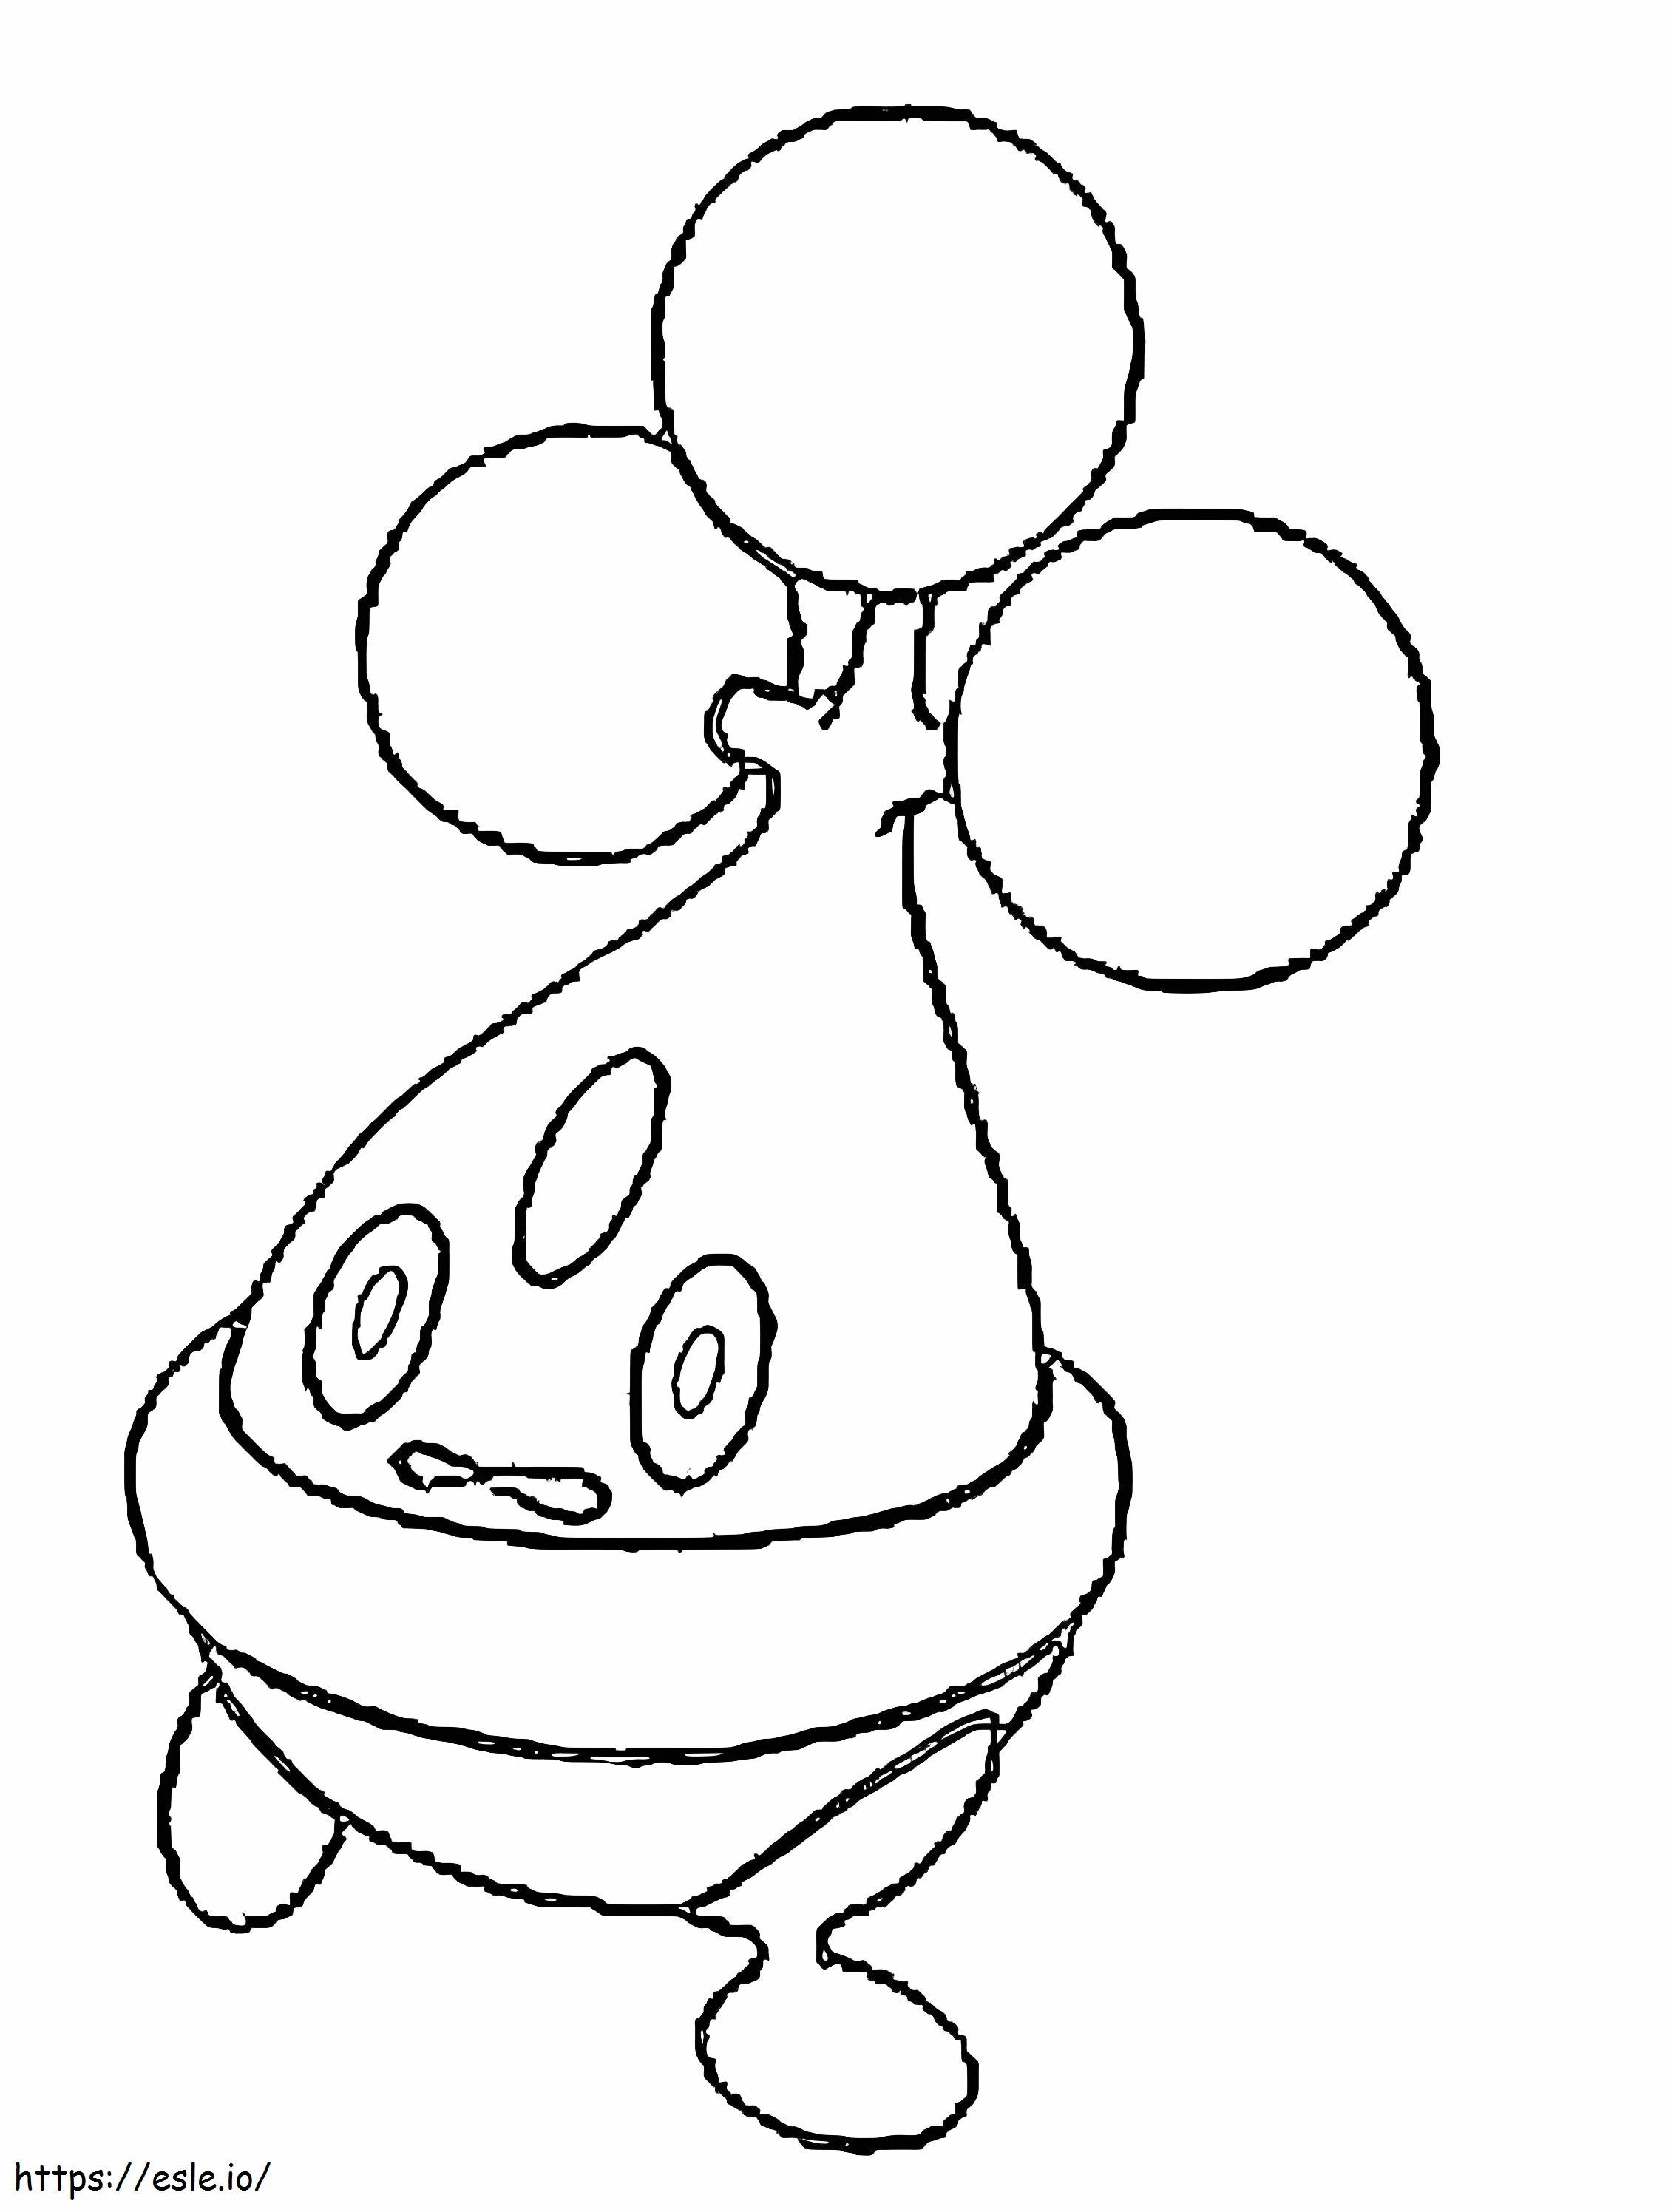 Coloriage Pokémon Bonsly Gen 4 à imprimer dessin